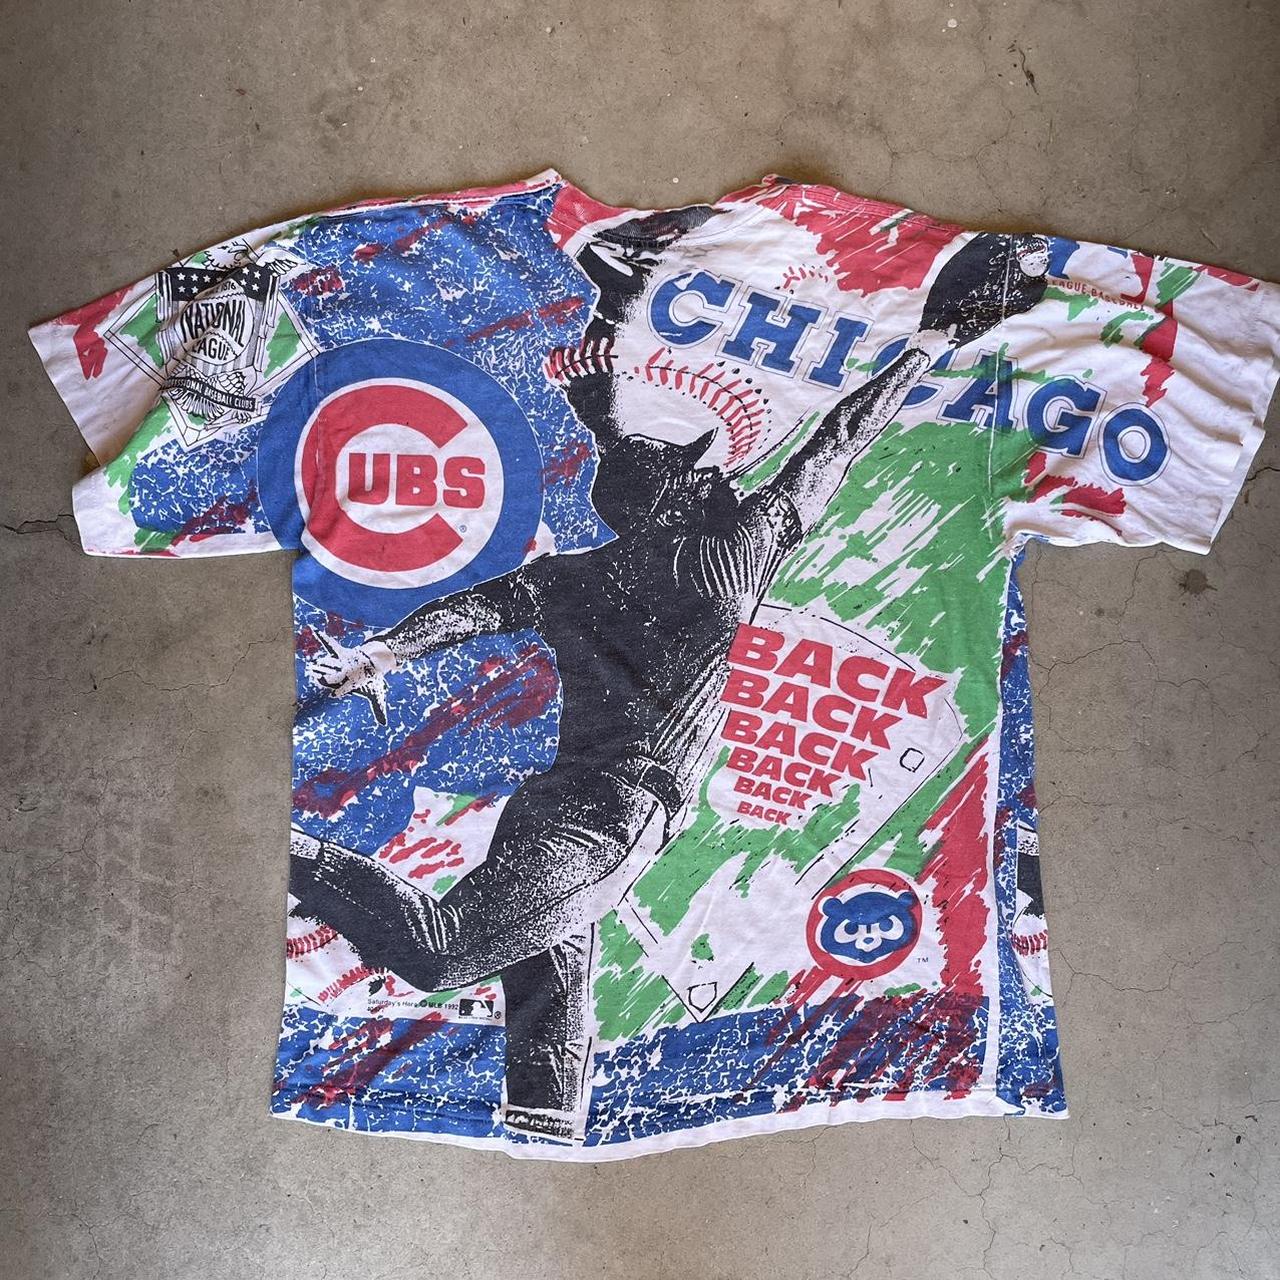 Vintage 90s Chicago Cubs t-shirt Salem brand MLB - Depop